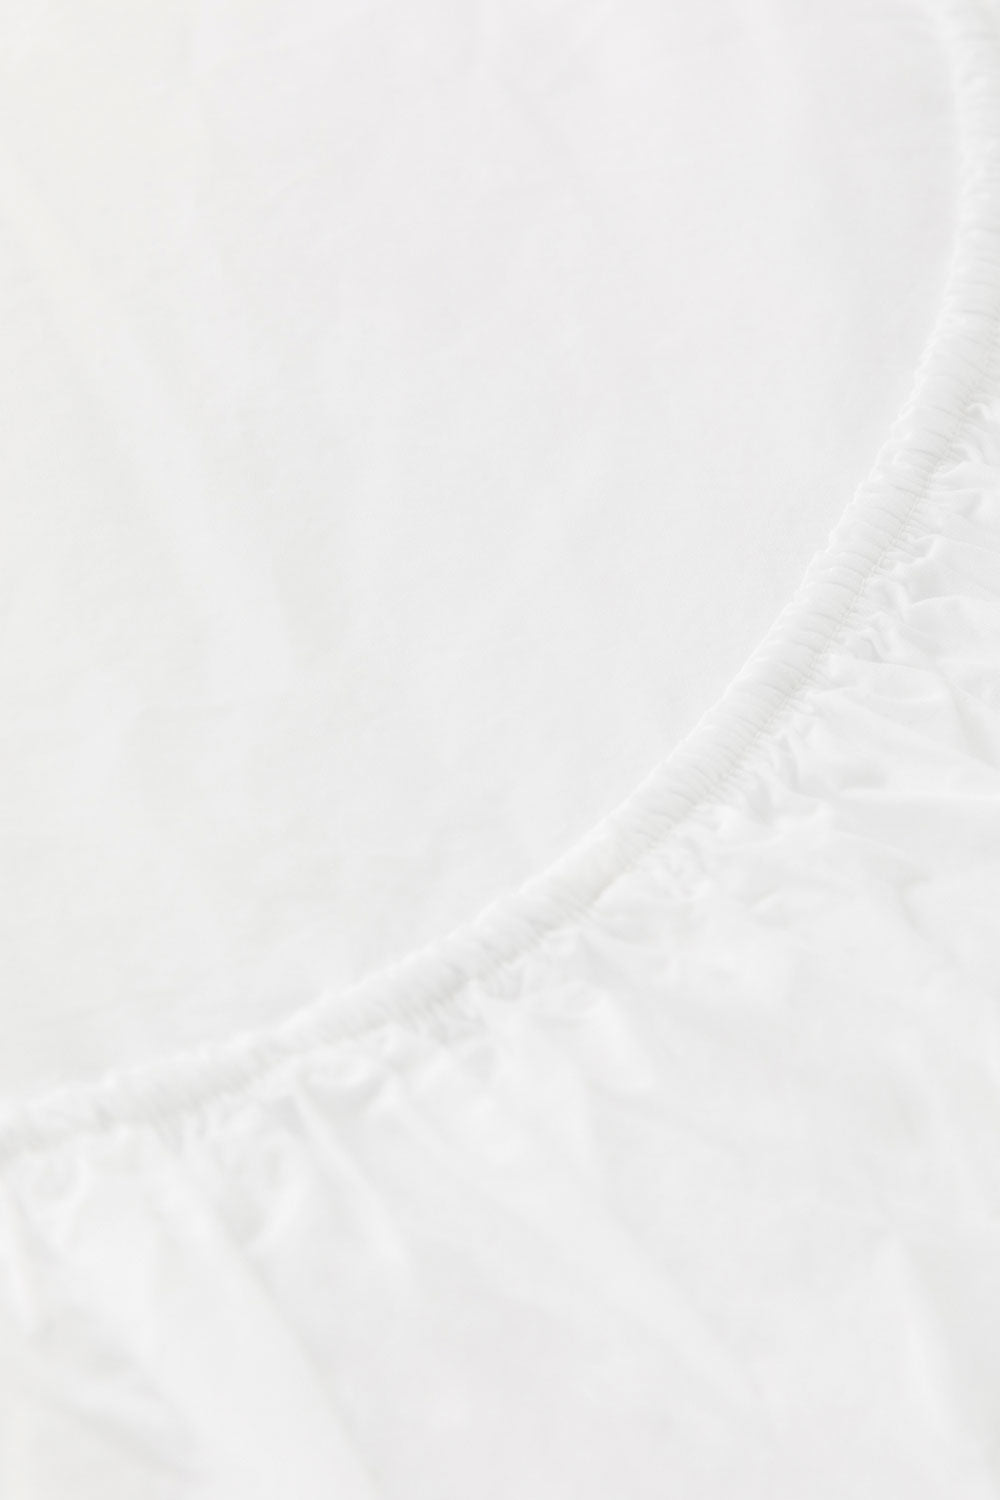 Faconlagen (180*200*35 cm), Bright White